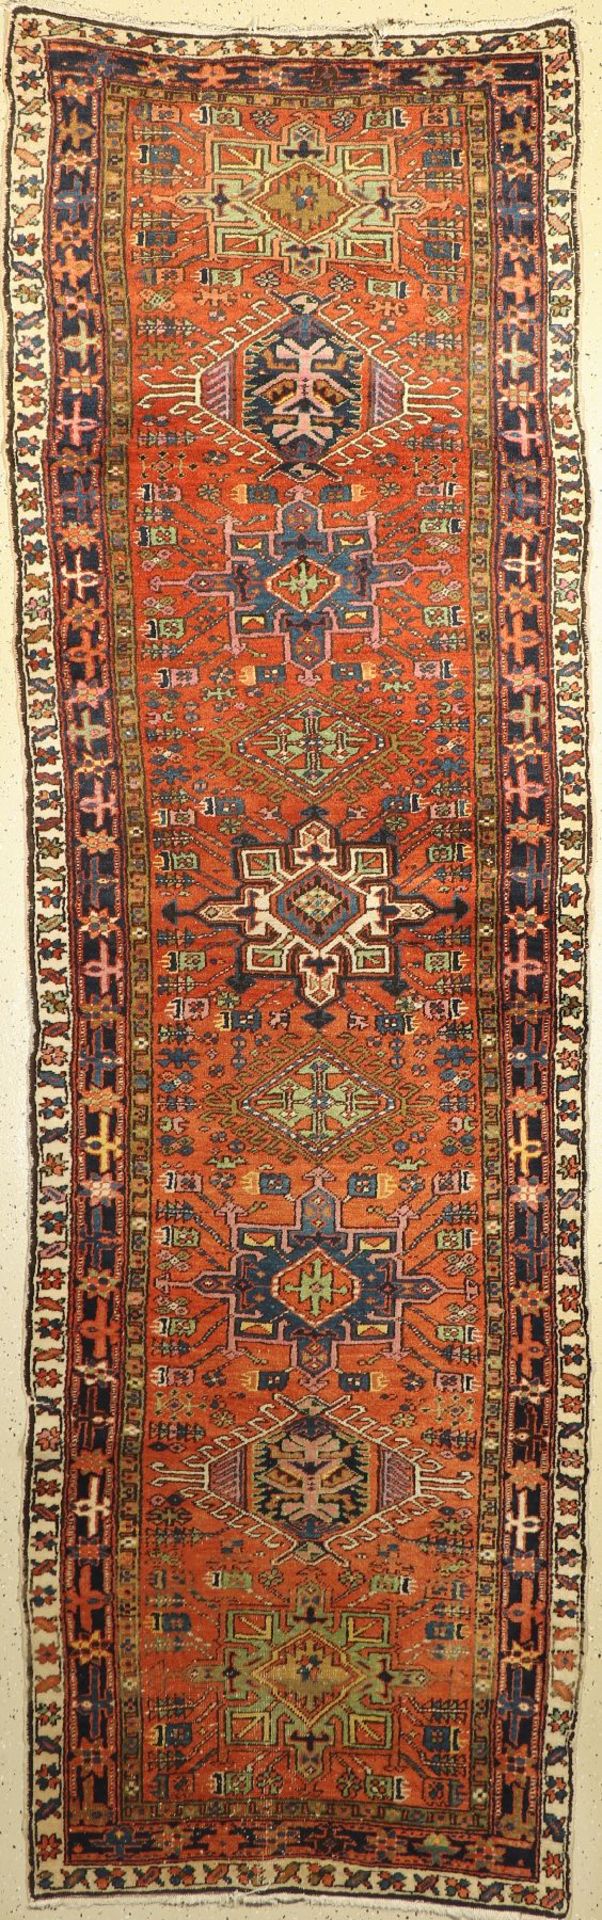 Karadja "Galerie" alt, Persien, um 1920, Wolle auf Baumwolle, ca. 338 x 101 cm, EHZ: 4Karadja "